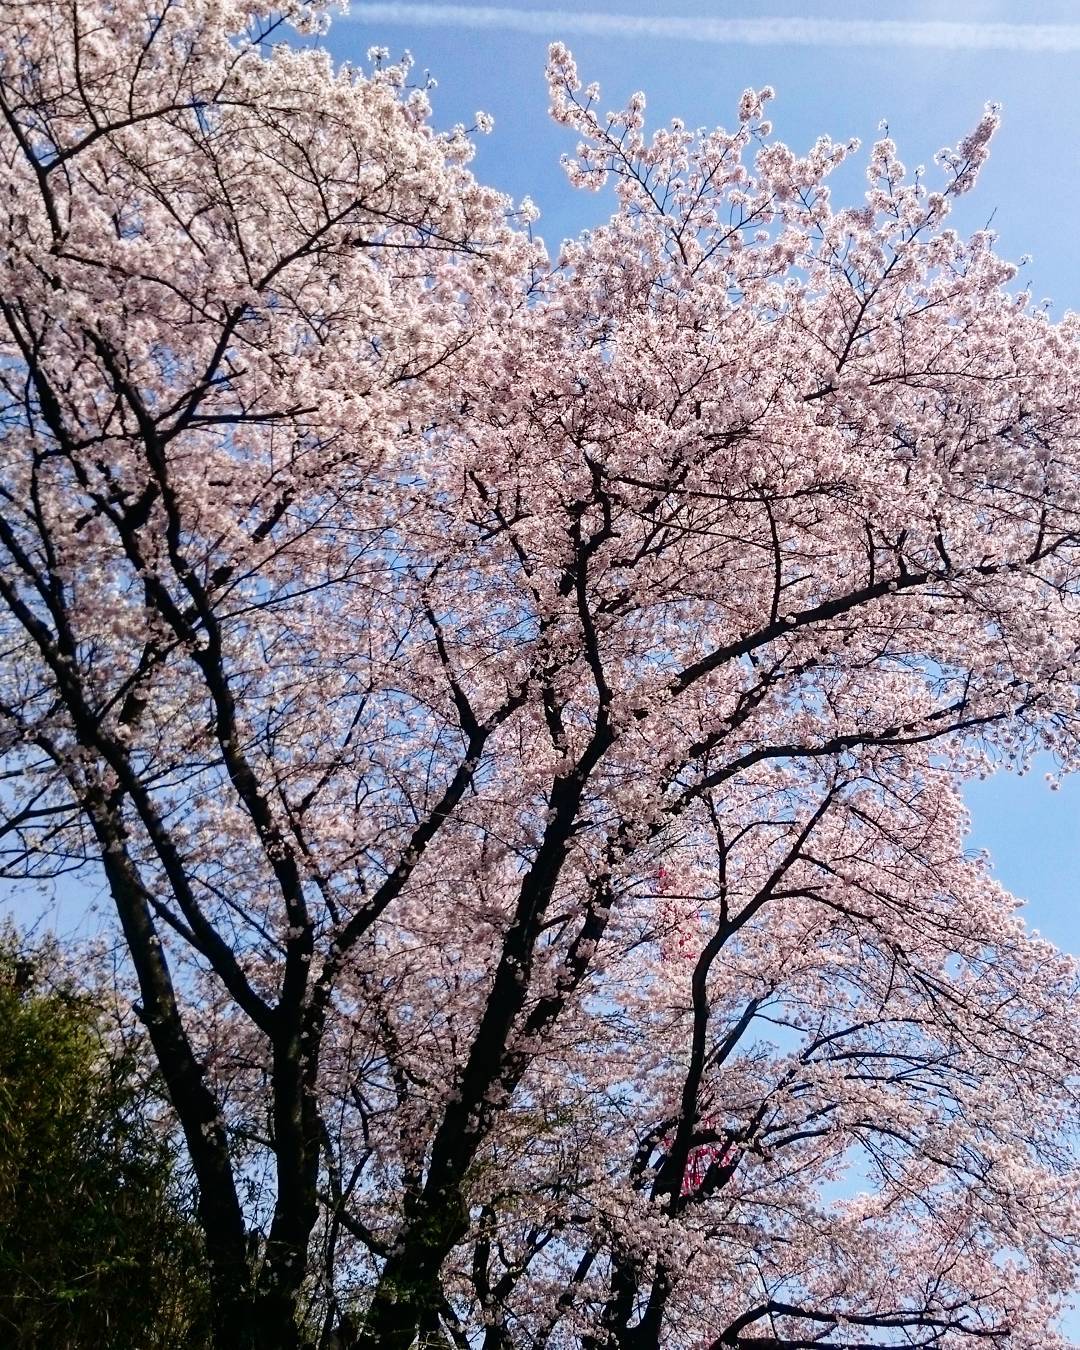 4. สวนสาธารณะฮิจิยามะ ฮิโรชิม่า